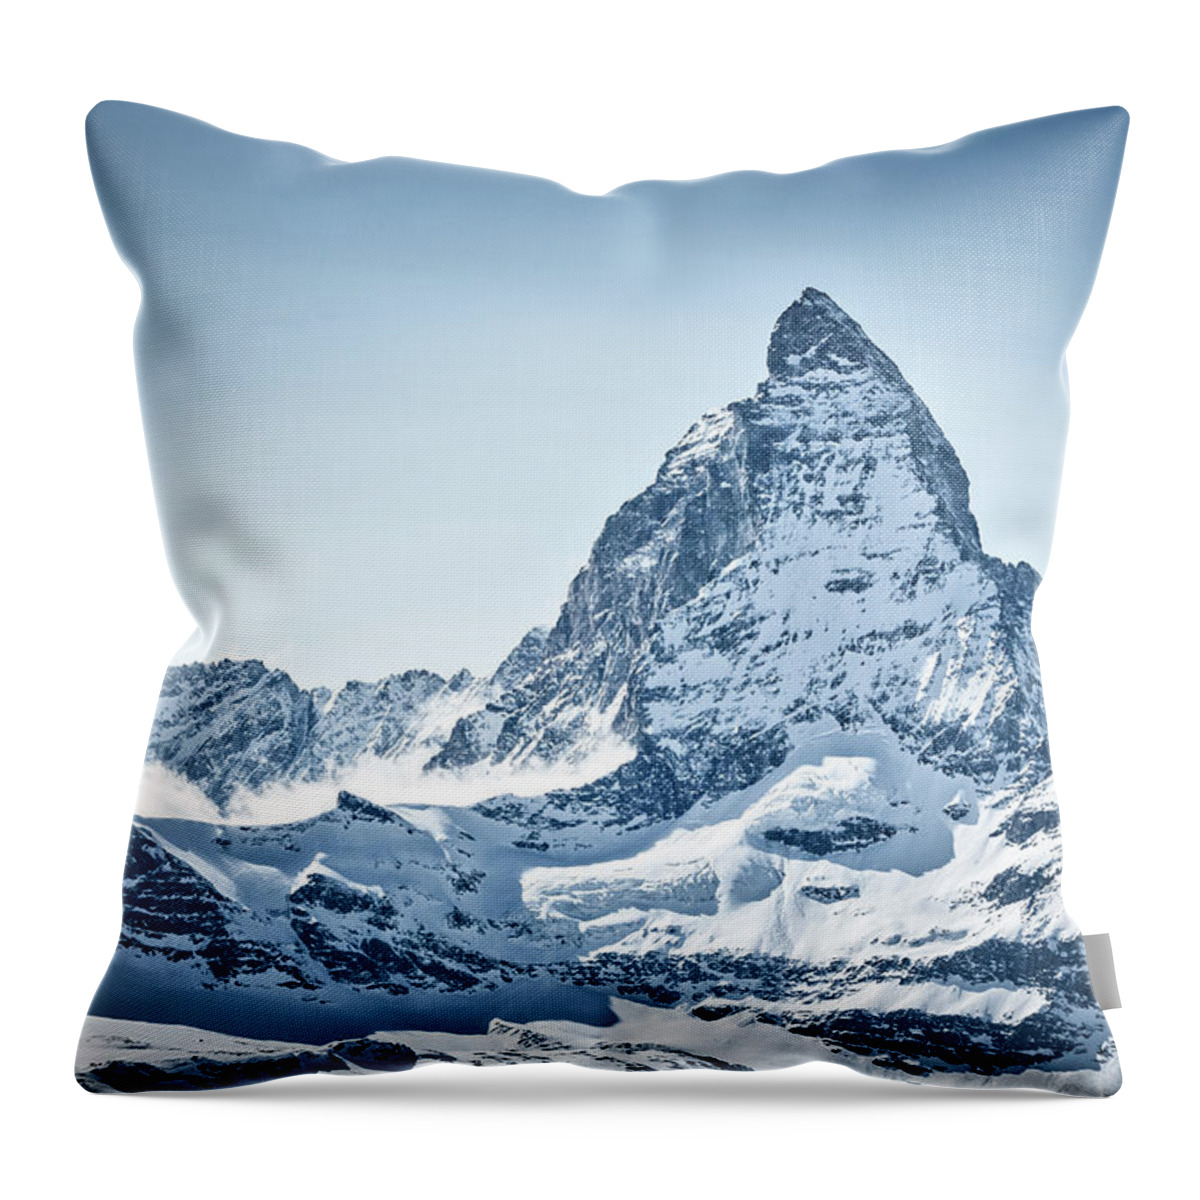 Resolution Throw Pillow featuring the photograph Matterhorn by Rick Deacon